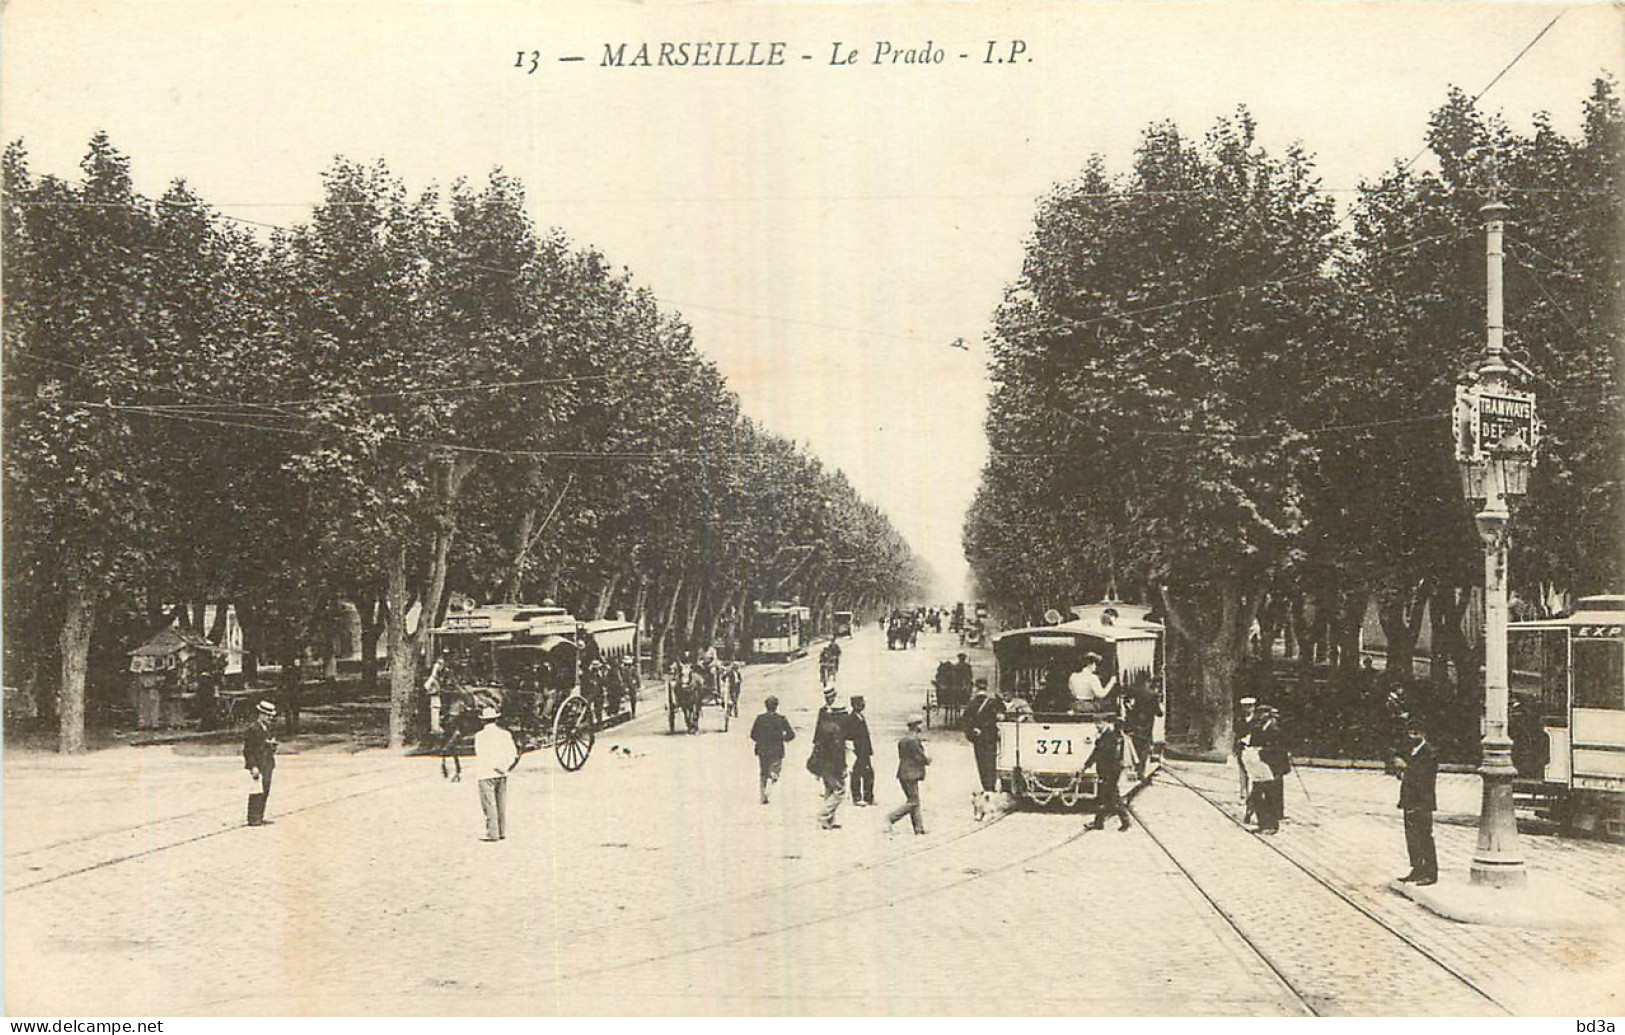 13 - MARSEILLE - LE PRADO  - Castellane, Prado, Menpenti, Rouet